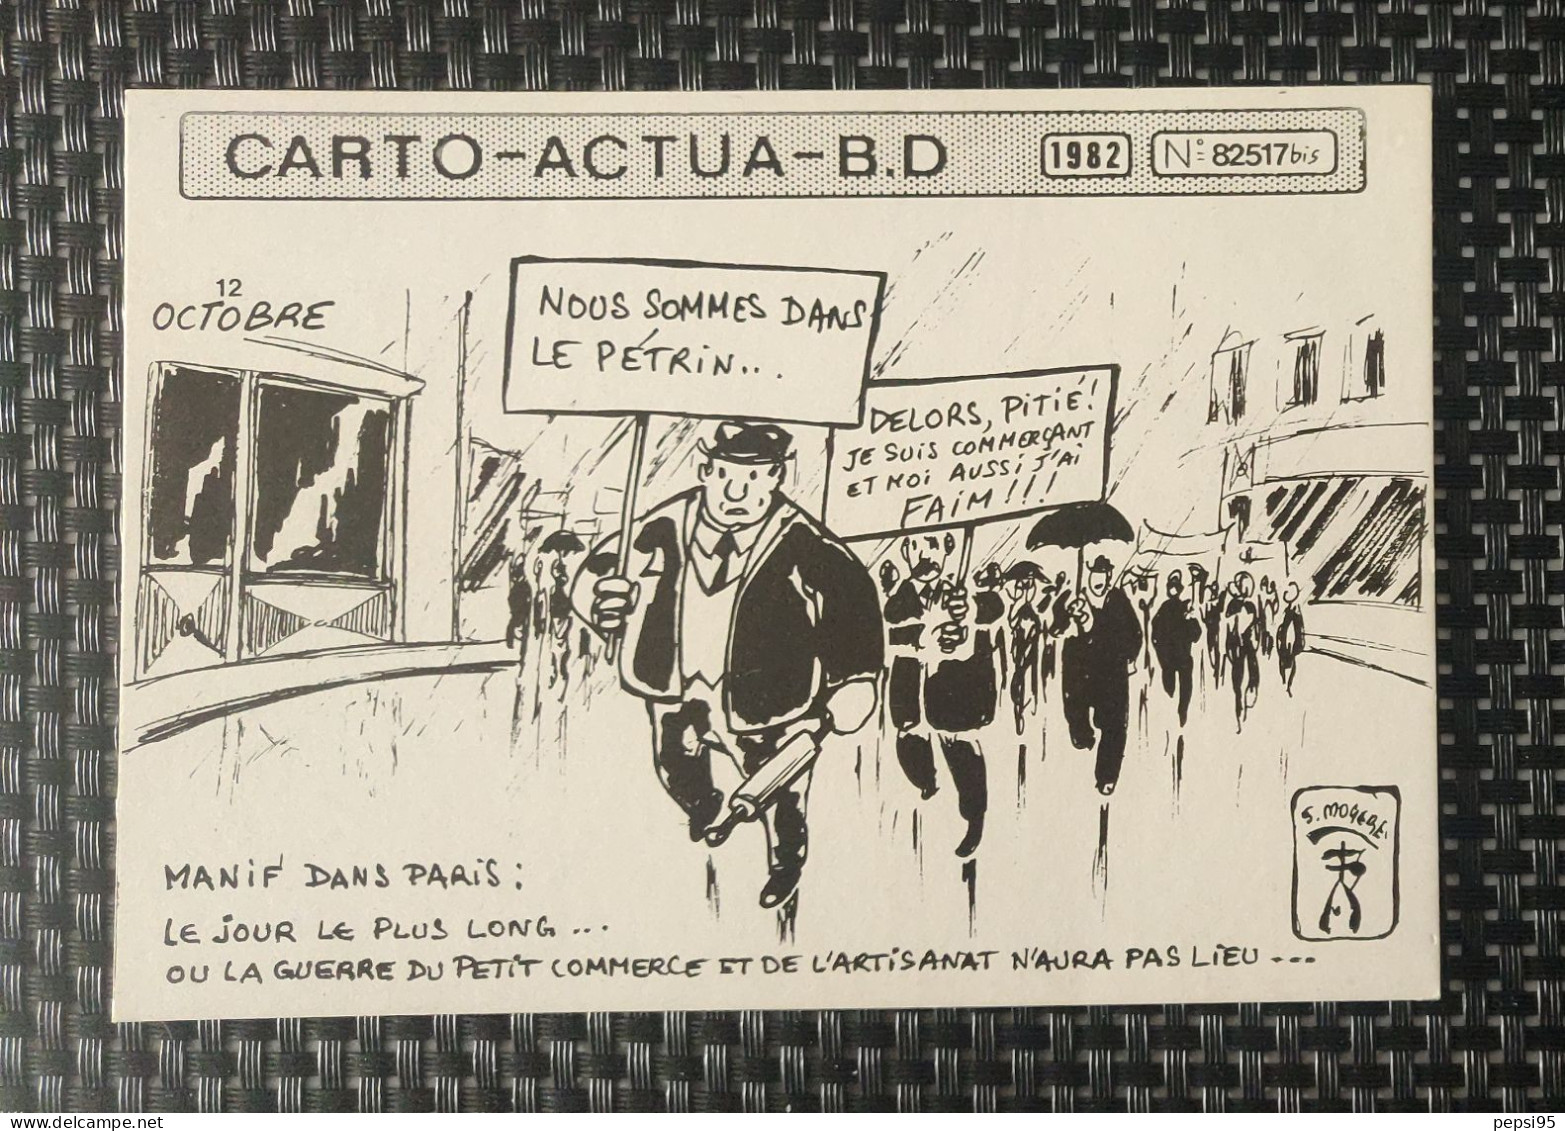 (CPI03) Carte Postale CARTO ACTUA B D N° 82517bis - 1982 - S. MOGERE - Nous Sommes Dans Le Pétrin - Cómics